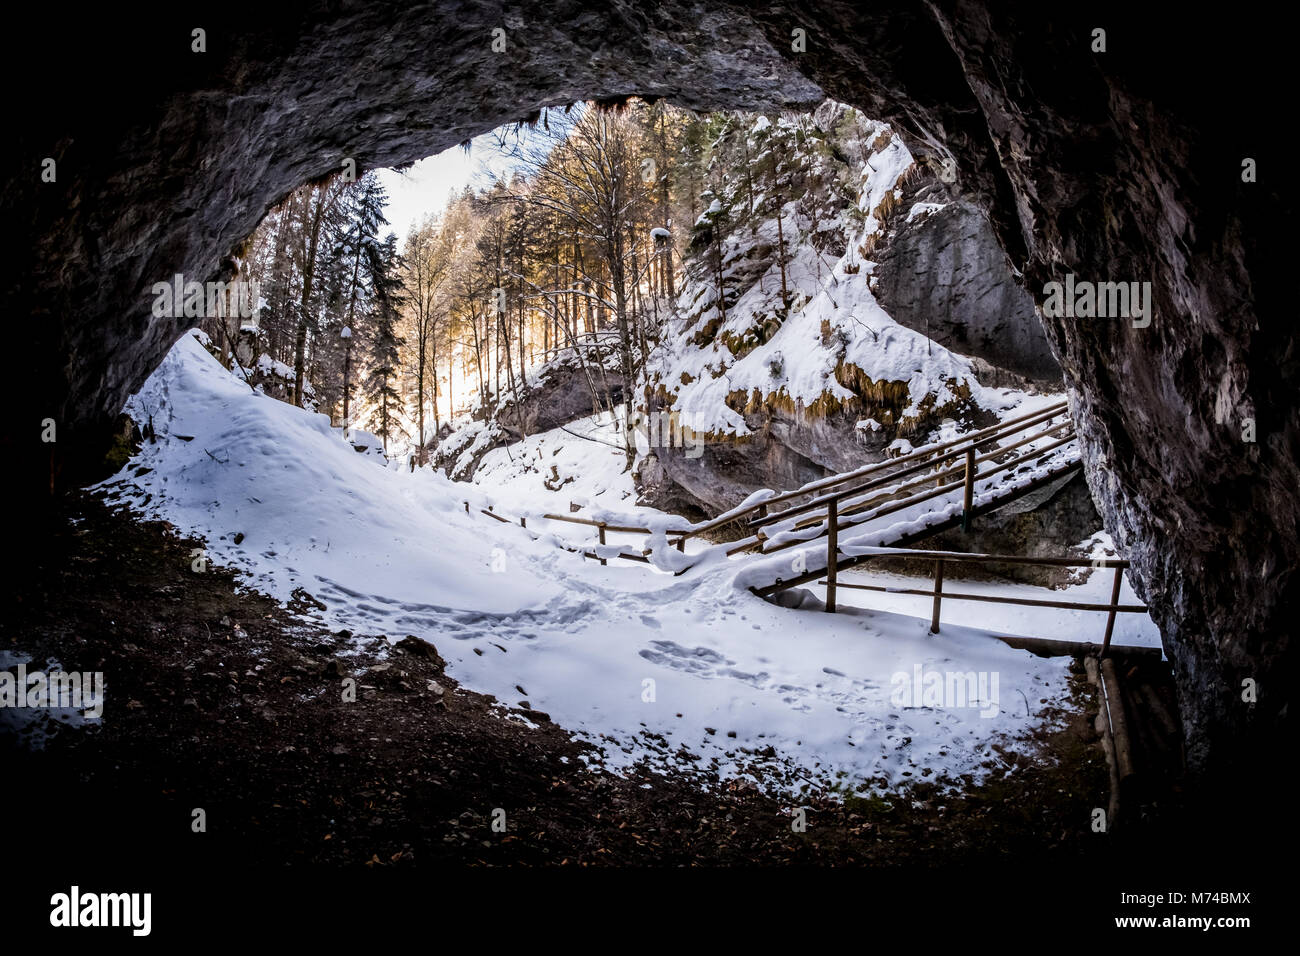 Vista desde la cueva oscura a gorge Baerenschuetzklamm cubierto de nieve con bosque y puente de madera en invierno Foto de stock